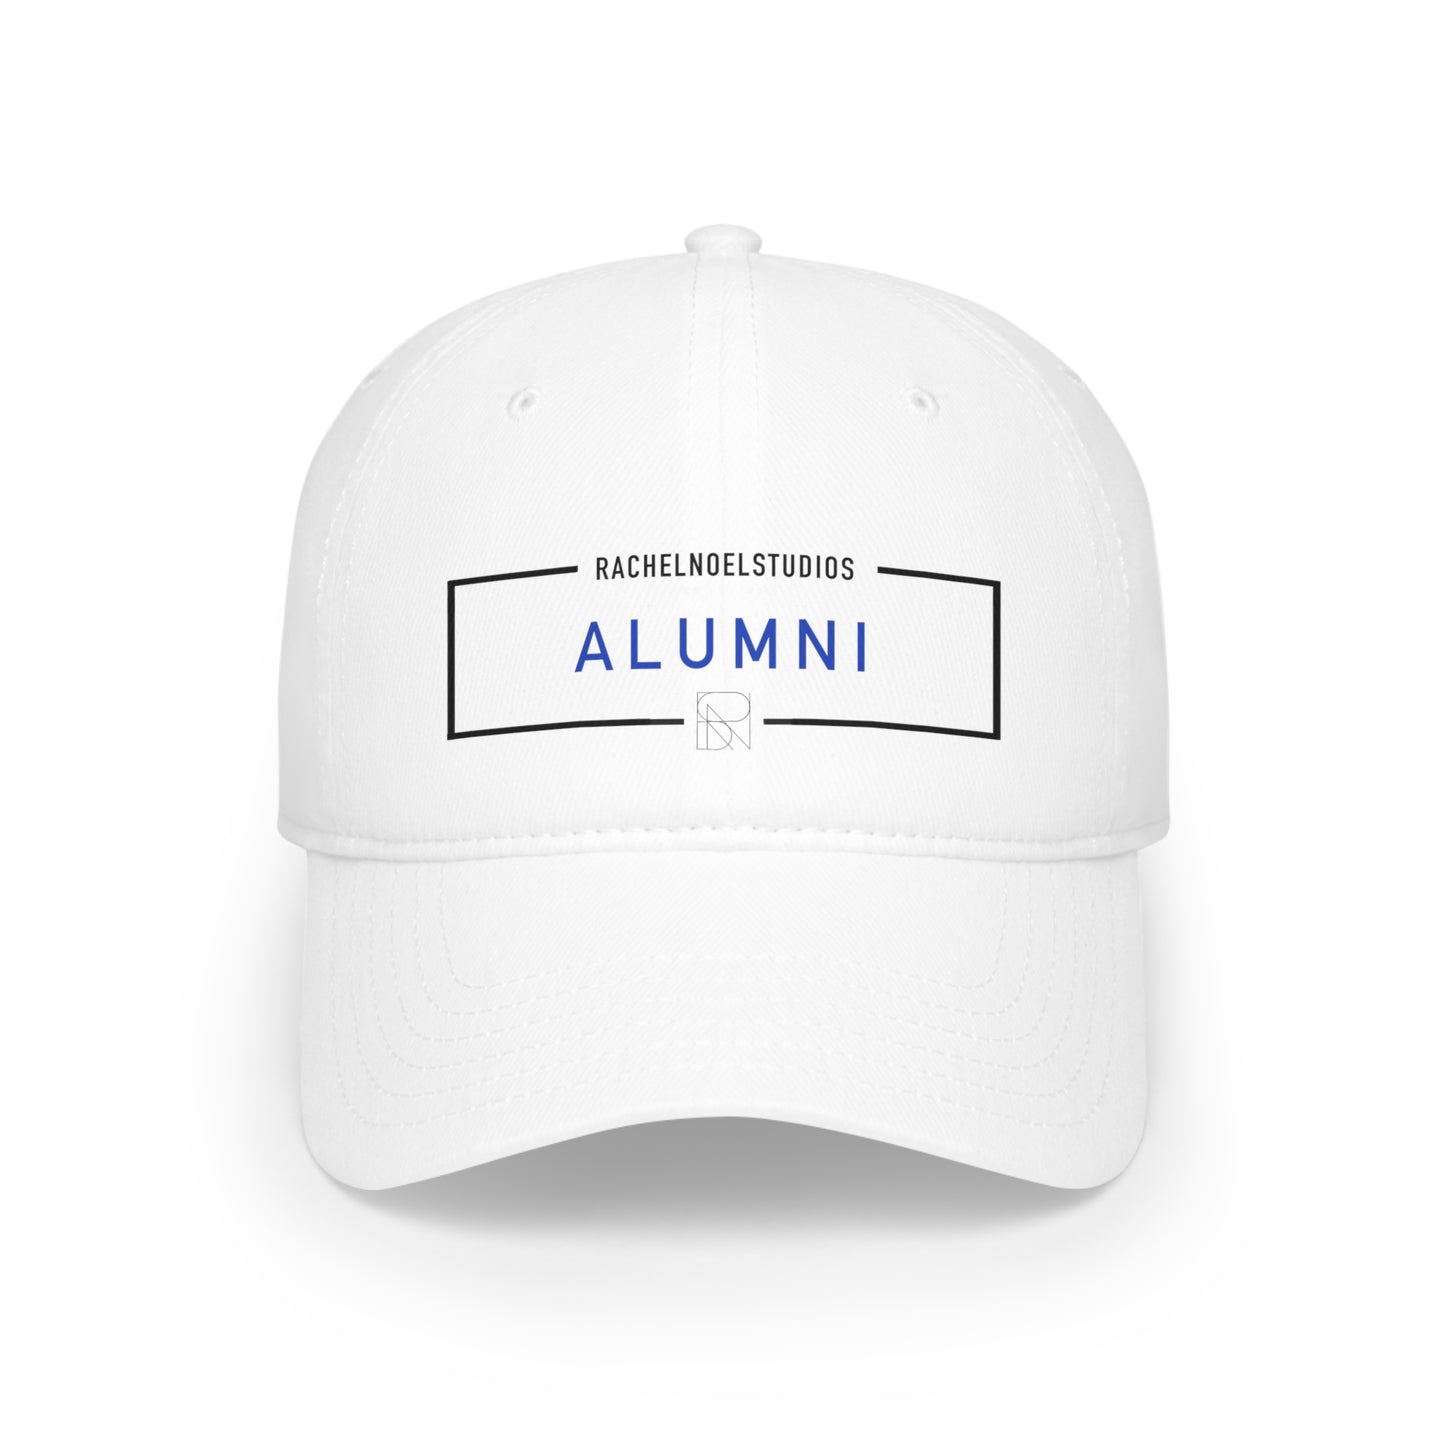 “Alumni” Baseball Cap